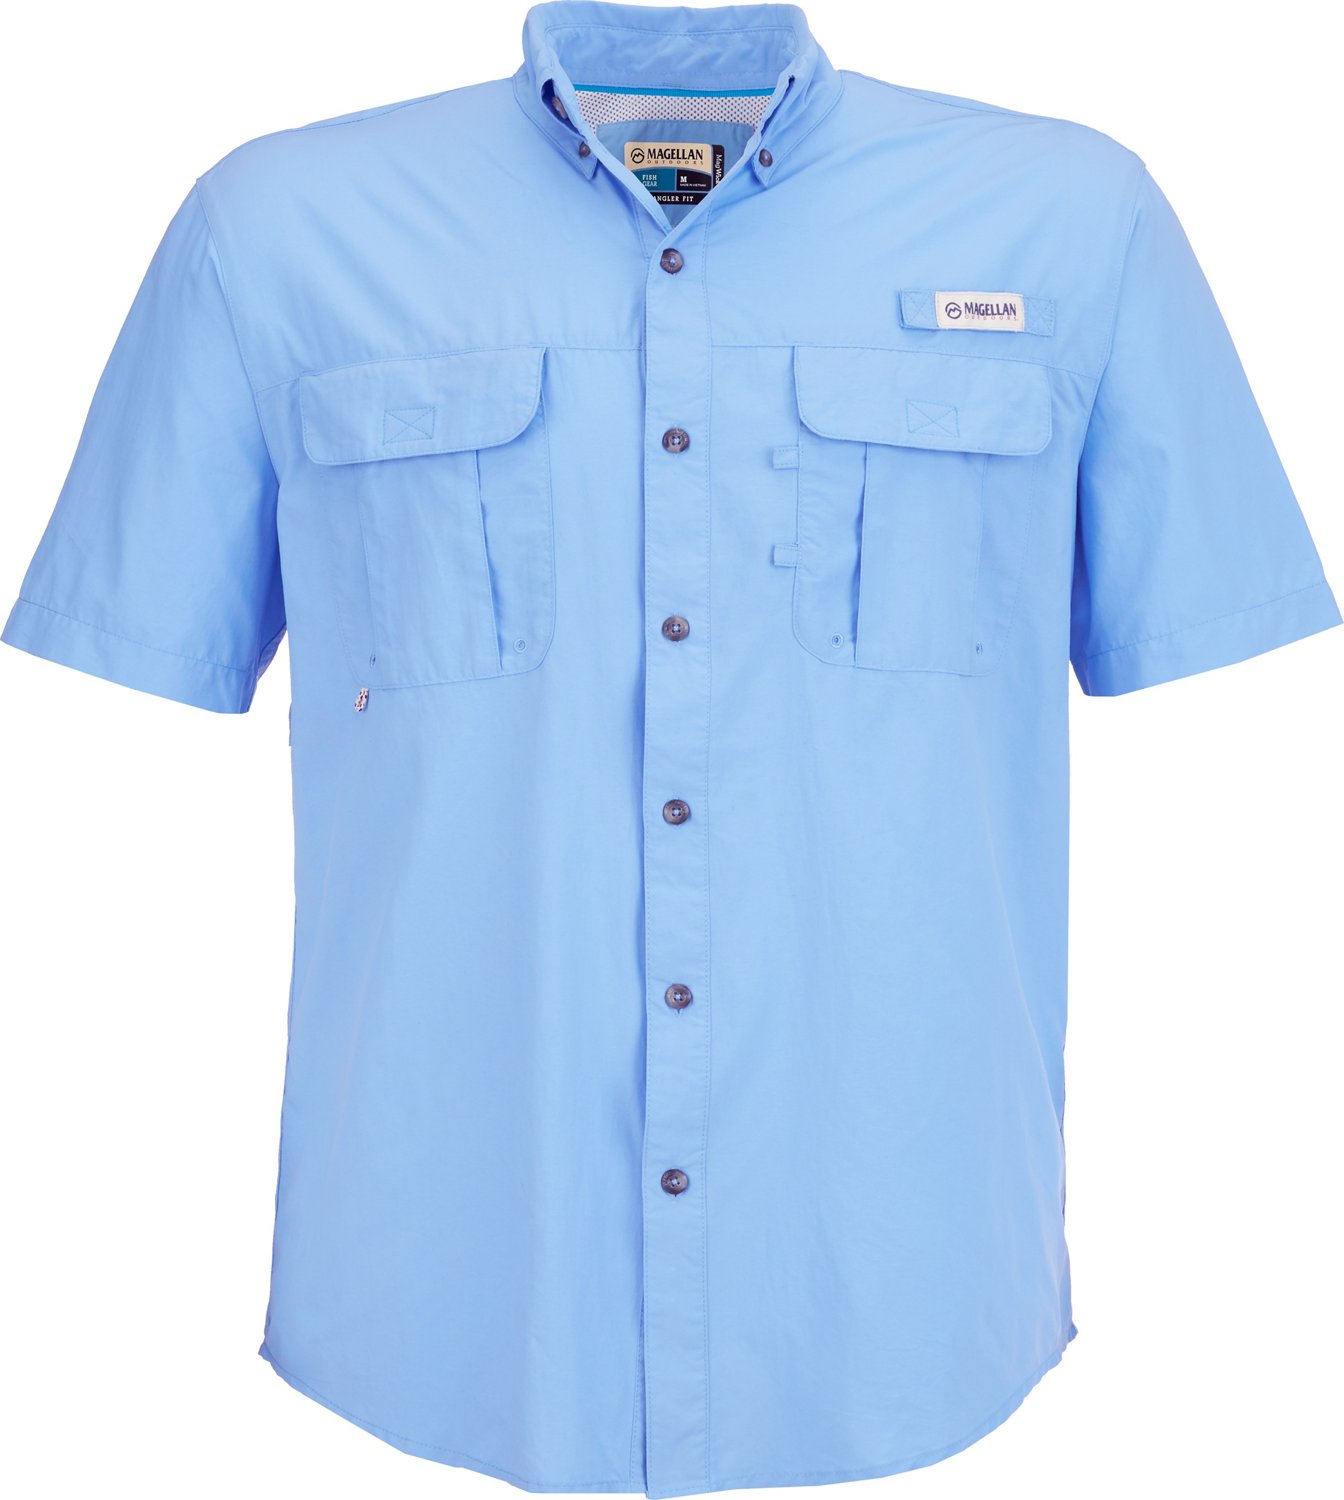 G Gradual Men's Short Sleeve Fishing Shirts Lightweight UPF 50 Sun